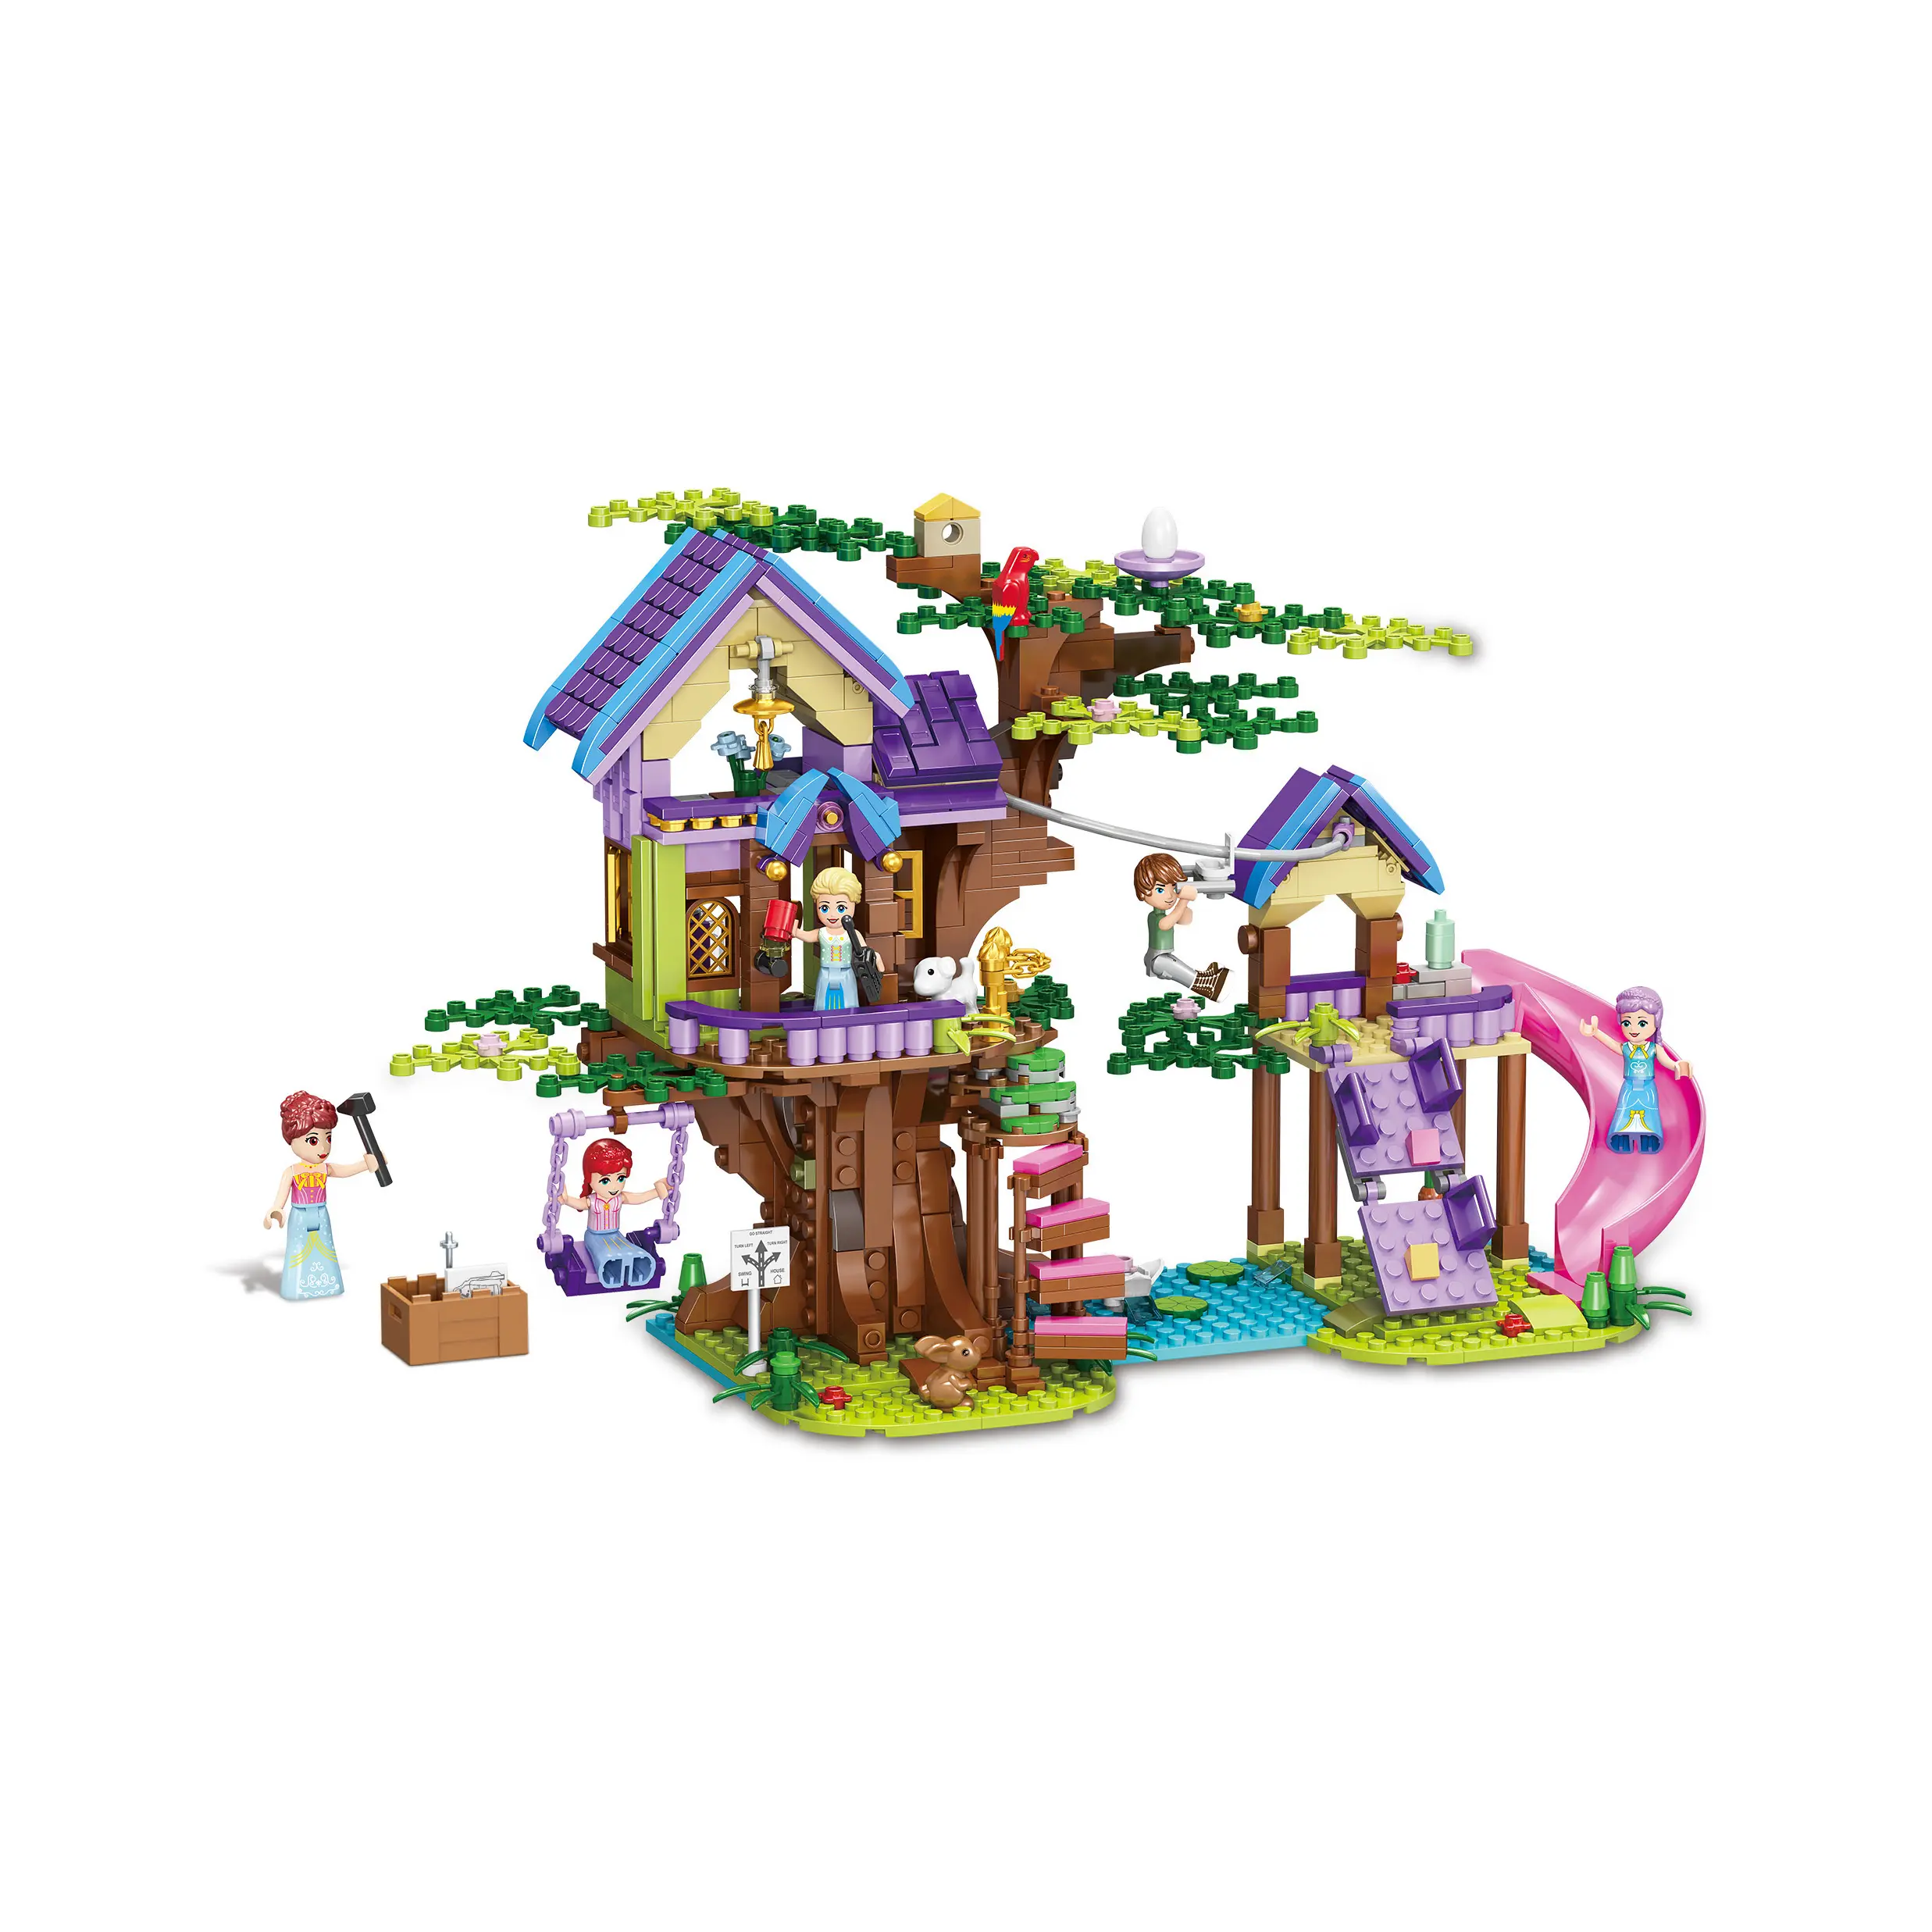 Arbre maison construction jouet cabane dans les arbres bloc de construction ensemble avec diapositives balançoire animaux amitié forêt maison pour enfants